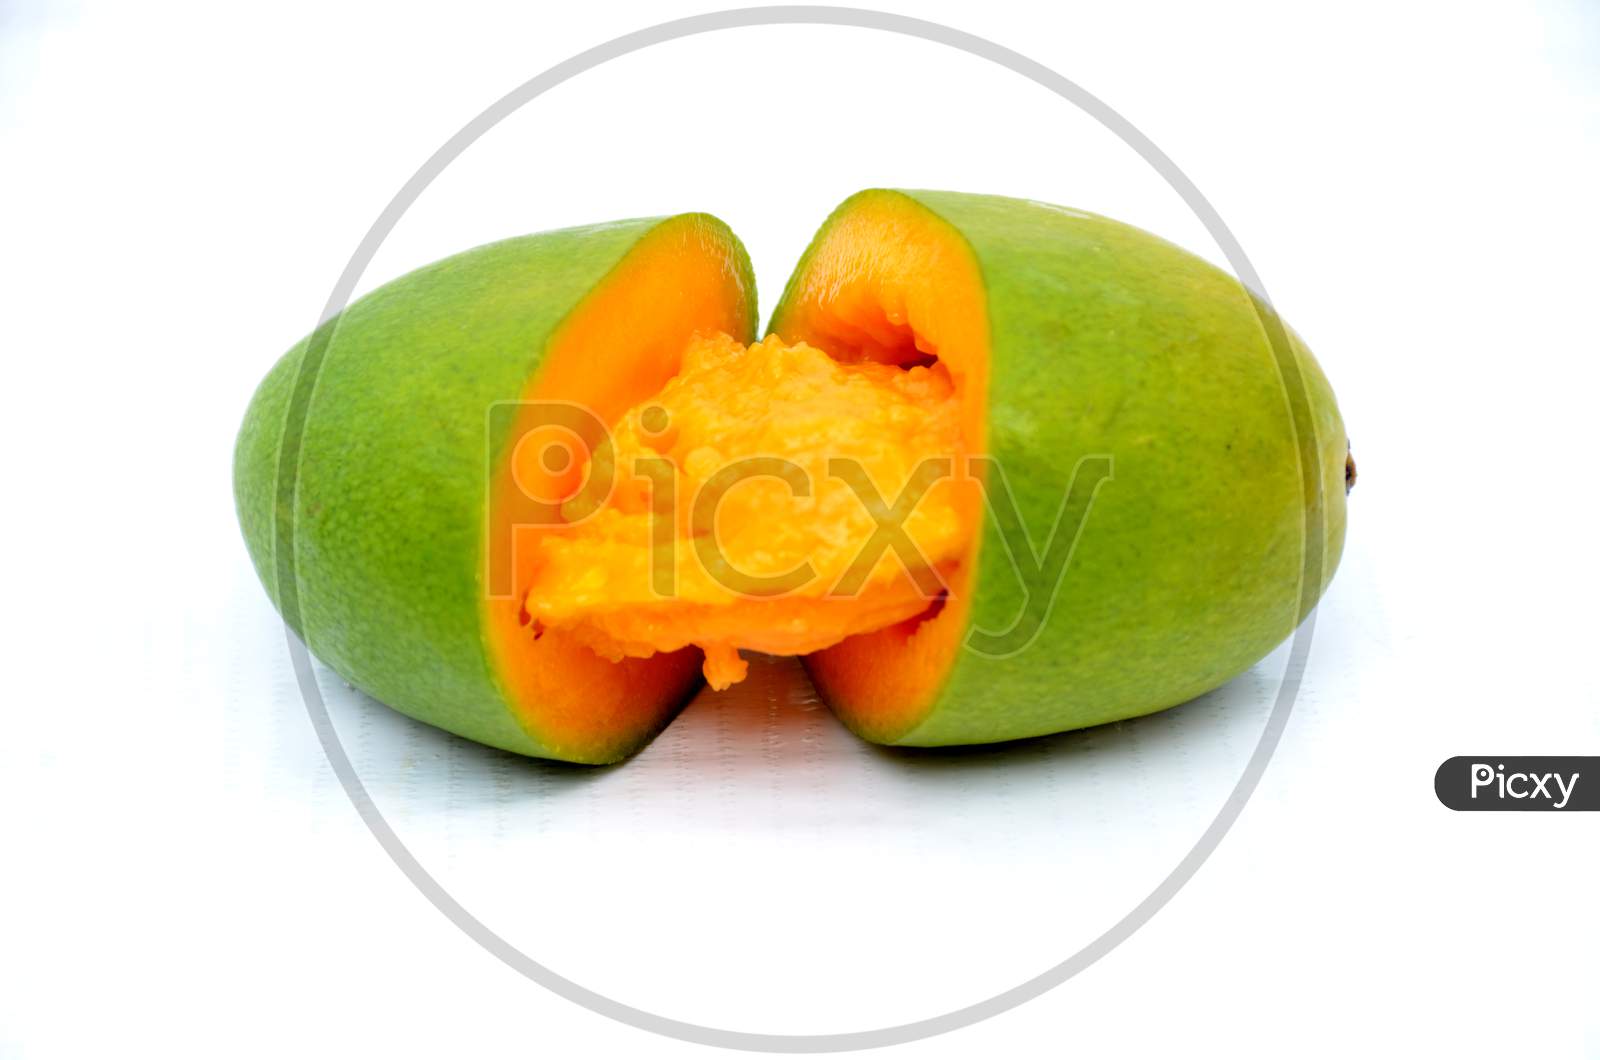 slice mango isolated on white background